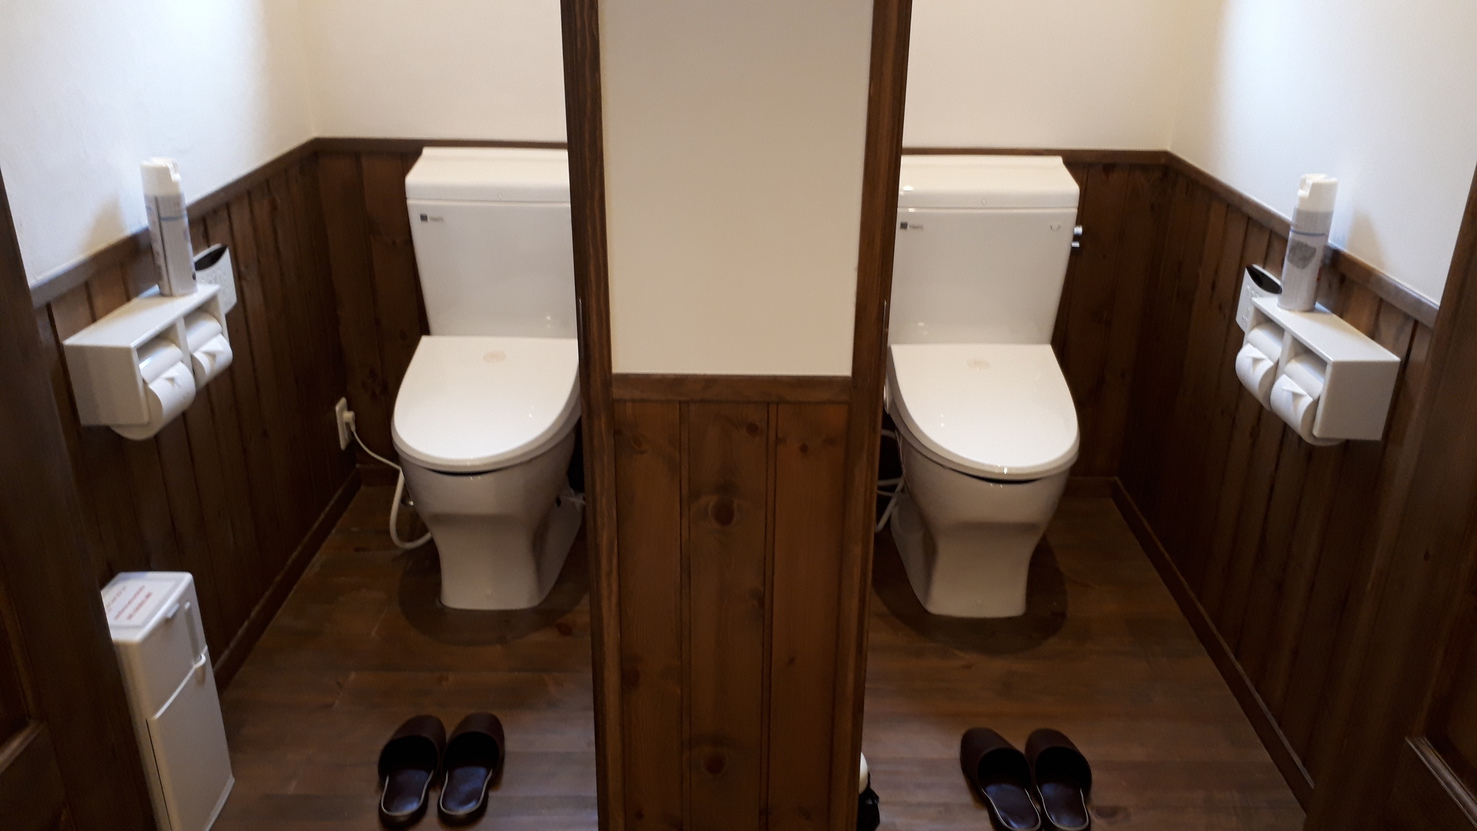  ・【一棟貸切ヴィリジアン】清潔感のあるウォシュレットトイレ